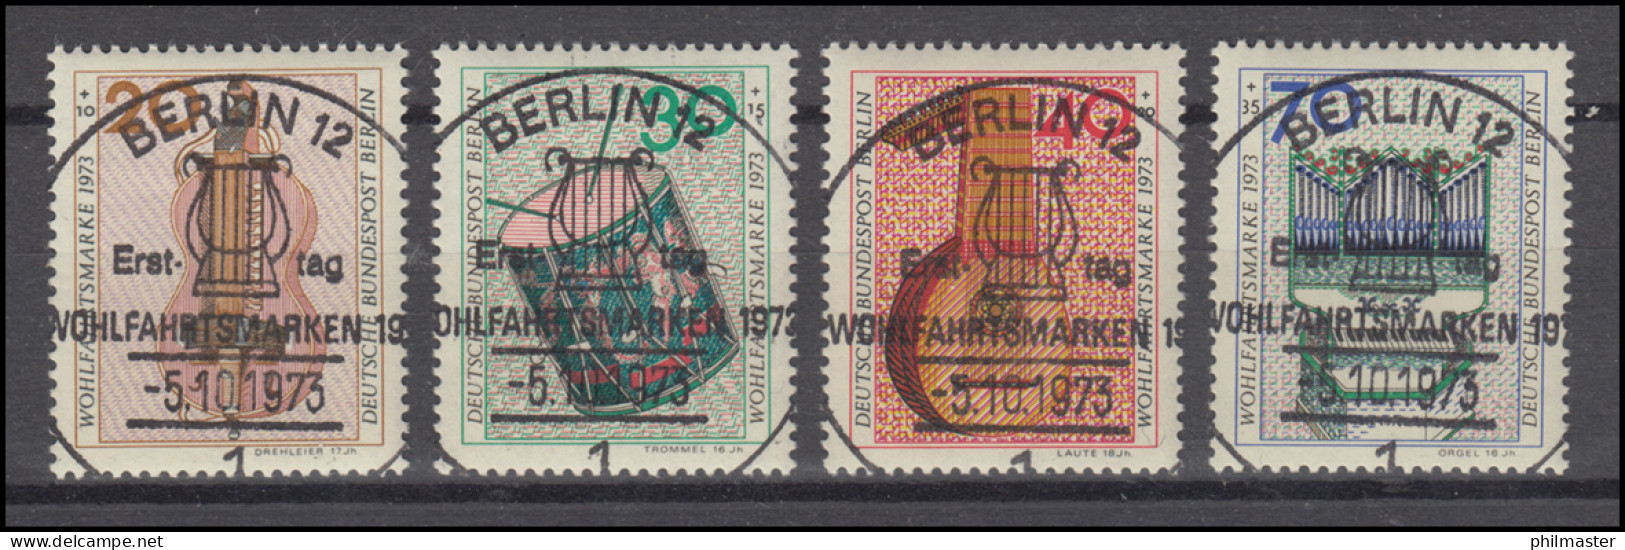 459-462 Wofa Musikinstrumente 1975 - Satz Mit Vollstempel ESSt BERLIN 15.10.75 - Used Stamps